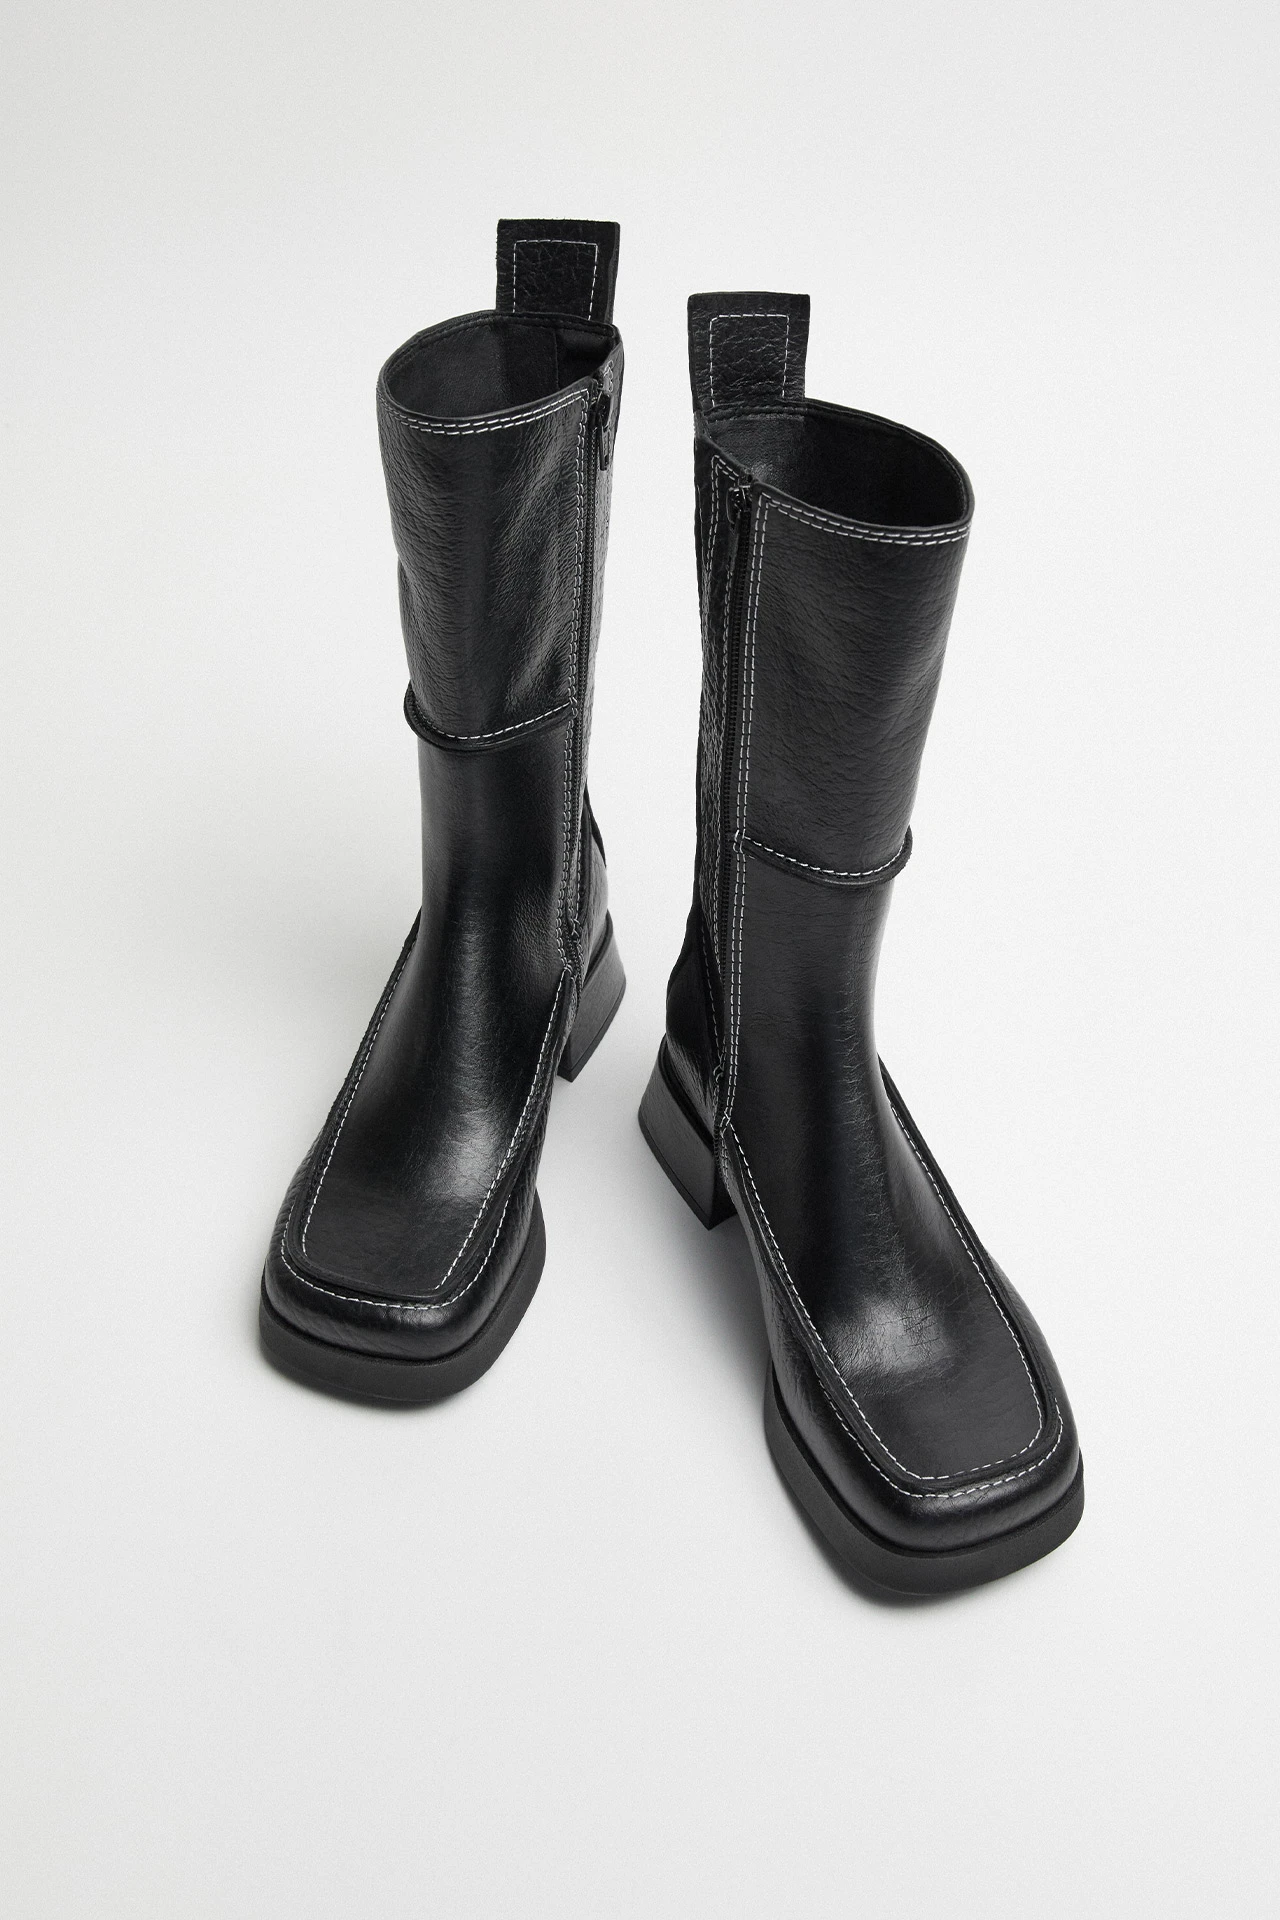 Miista-alzira-black-boots-04